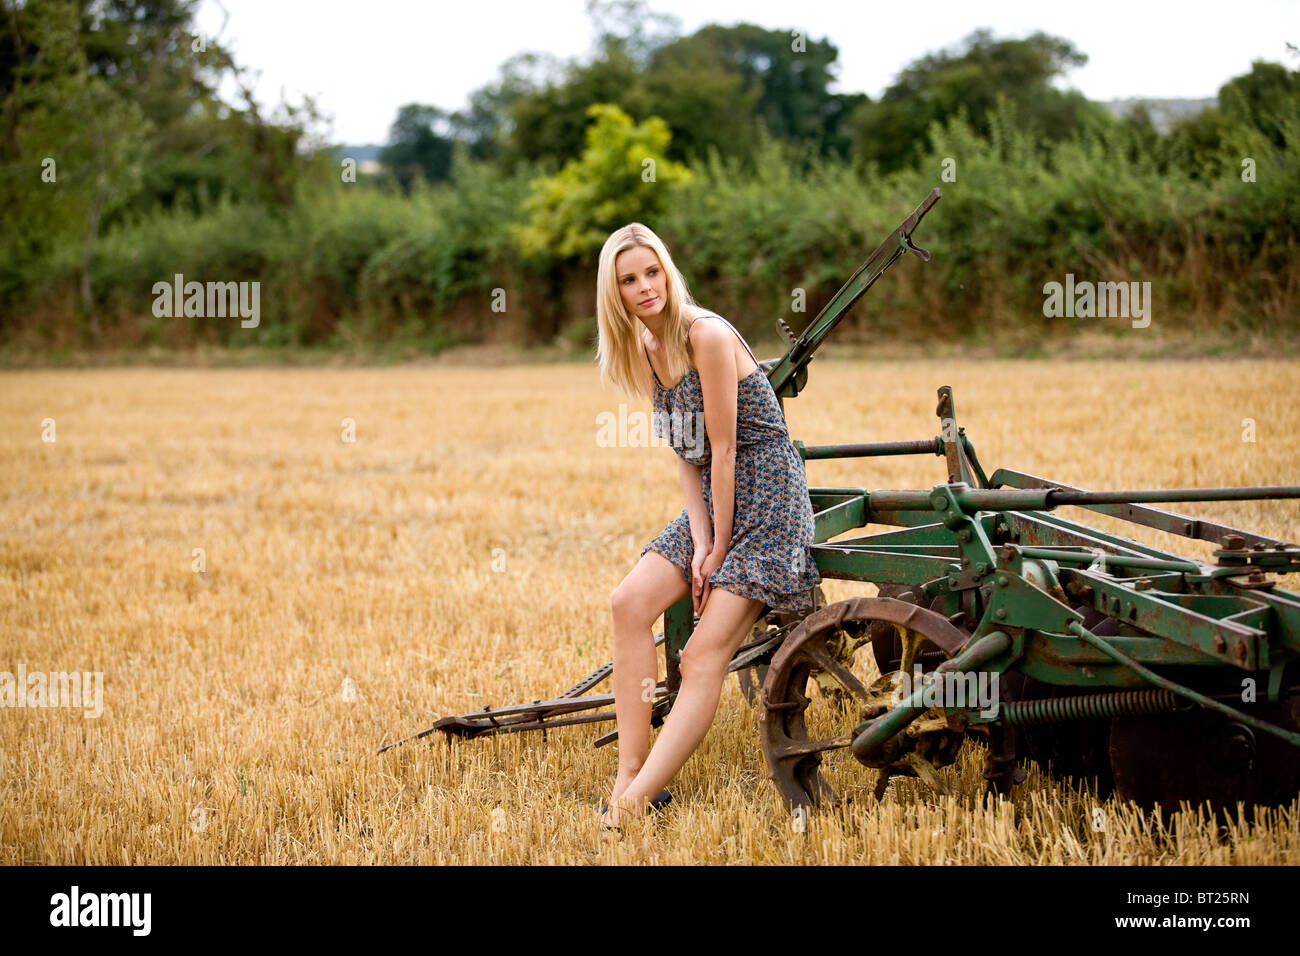 Eine Frau sitzt auf Landmaschinen in einem abgeernteten Weizenfeld Stockfoto